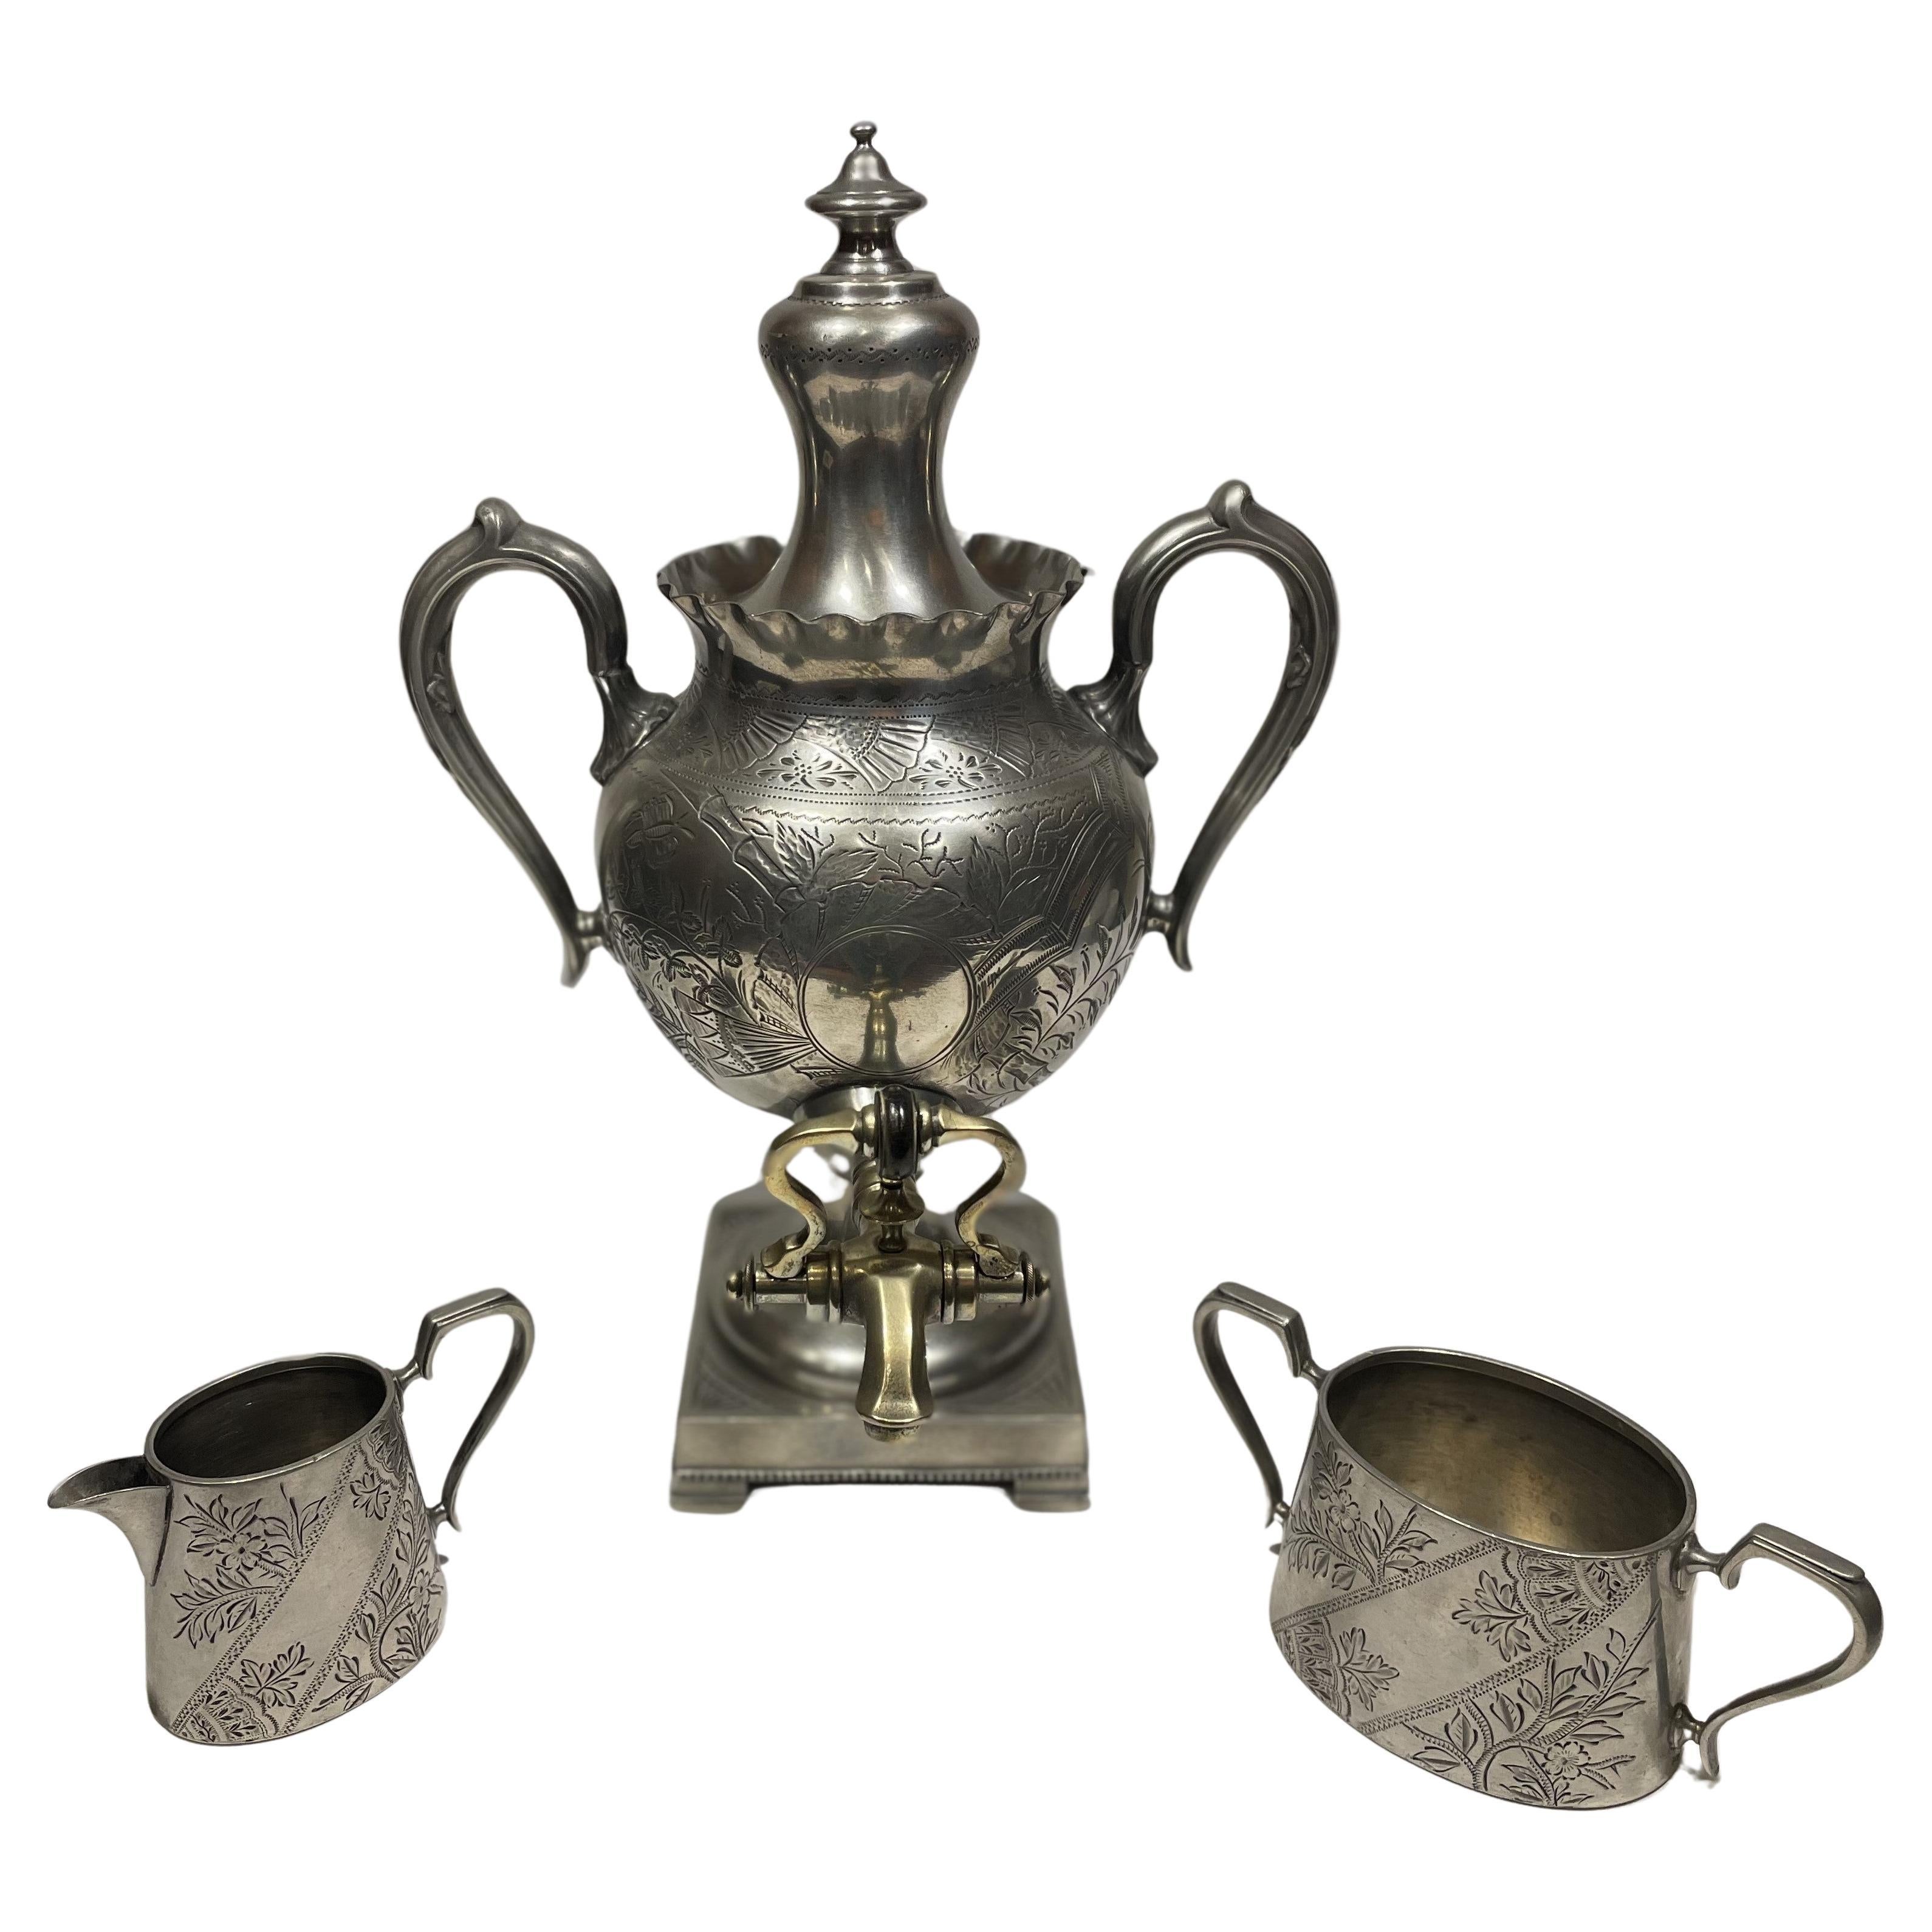 Datant de 1870 et fabriqué à Sheffield, en Angleterre, une ville bien connue pour sa conception et sa production d'argent, ce service à thé trois pièces en étain et en laiton est extrêmement bien conservé. Il s'agit d'une imposante urne à thé, d'un